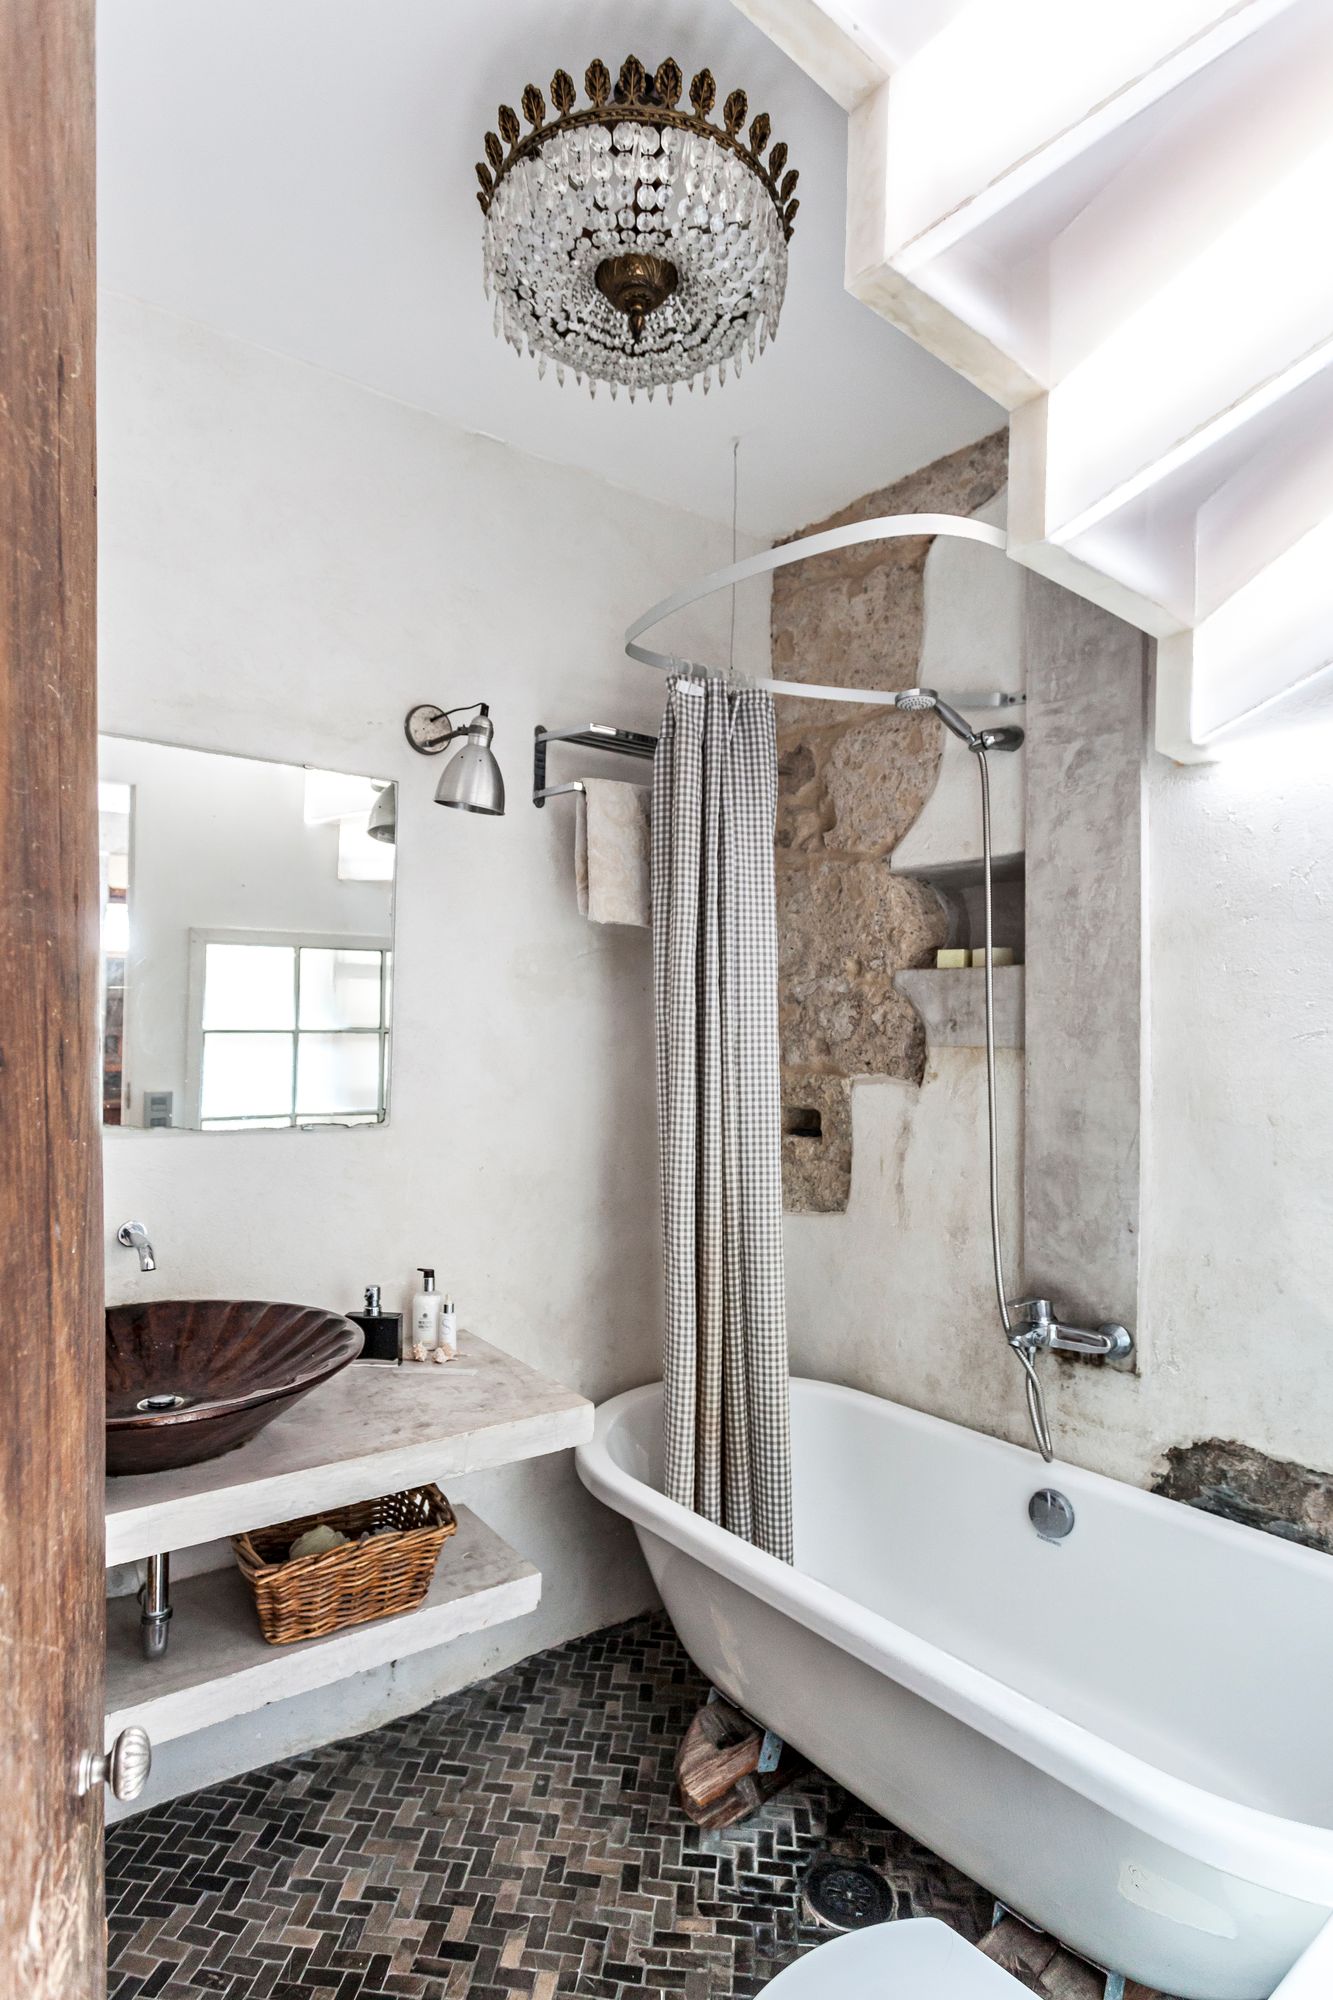 Uusi kylpyhuone tehtiin portaiden alle niin, että luonnonvalo siivilöityy tilaan kattoterassilta asti pleksilasien läpi.